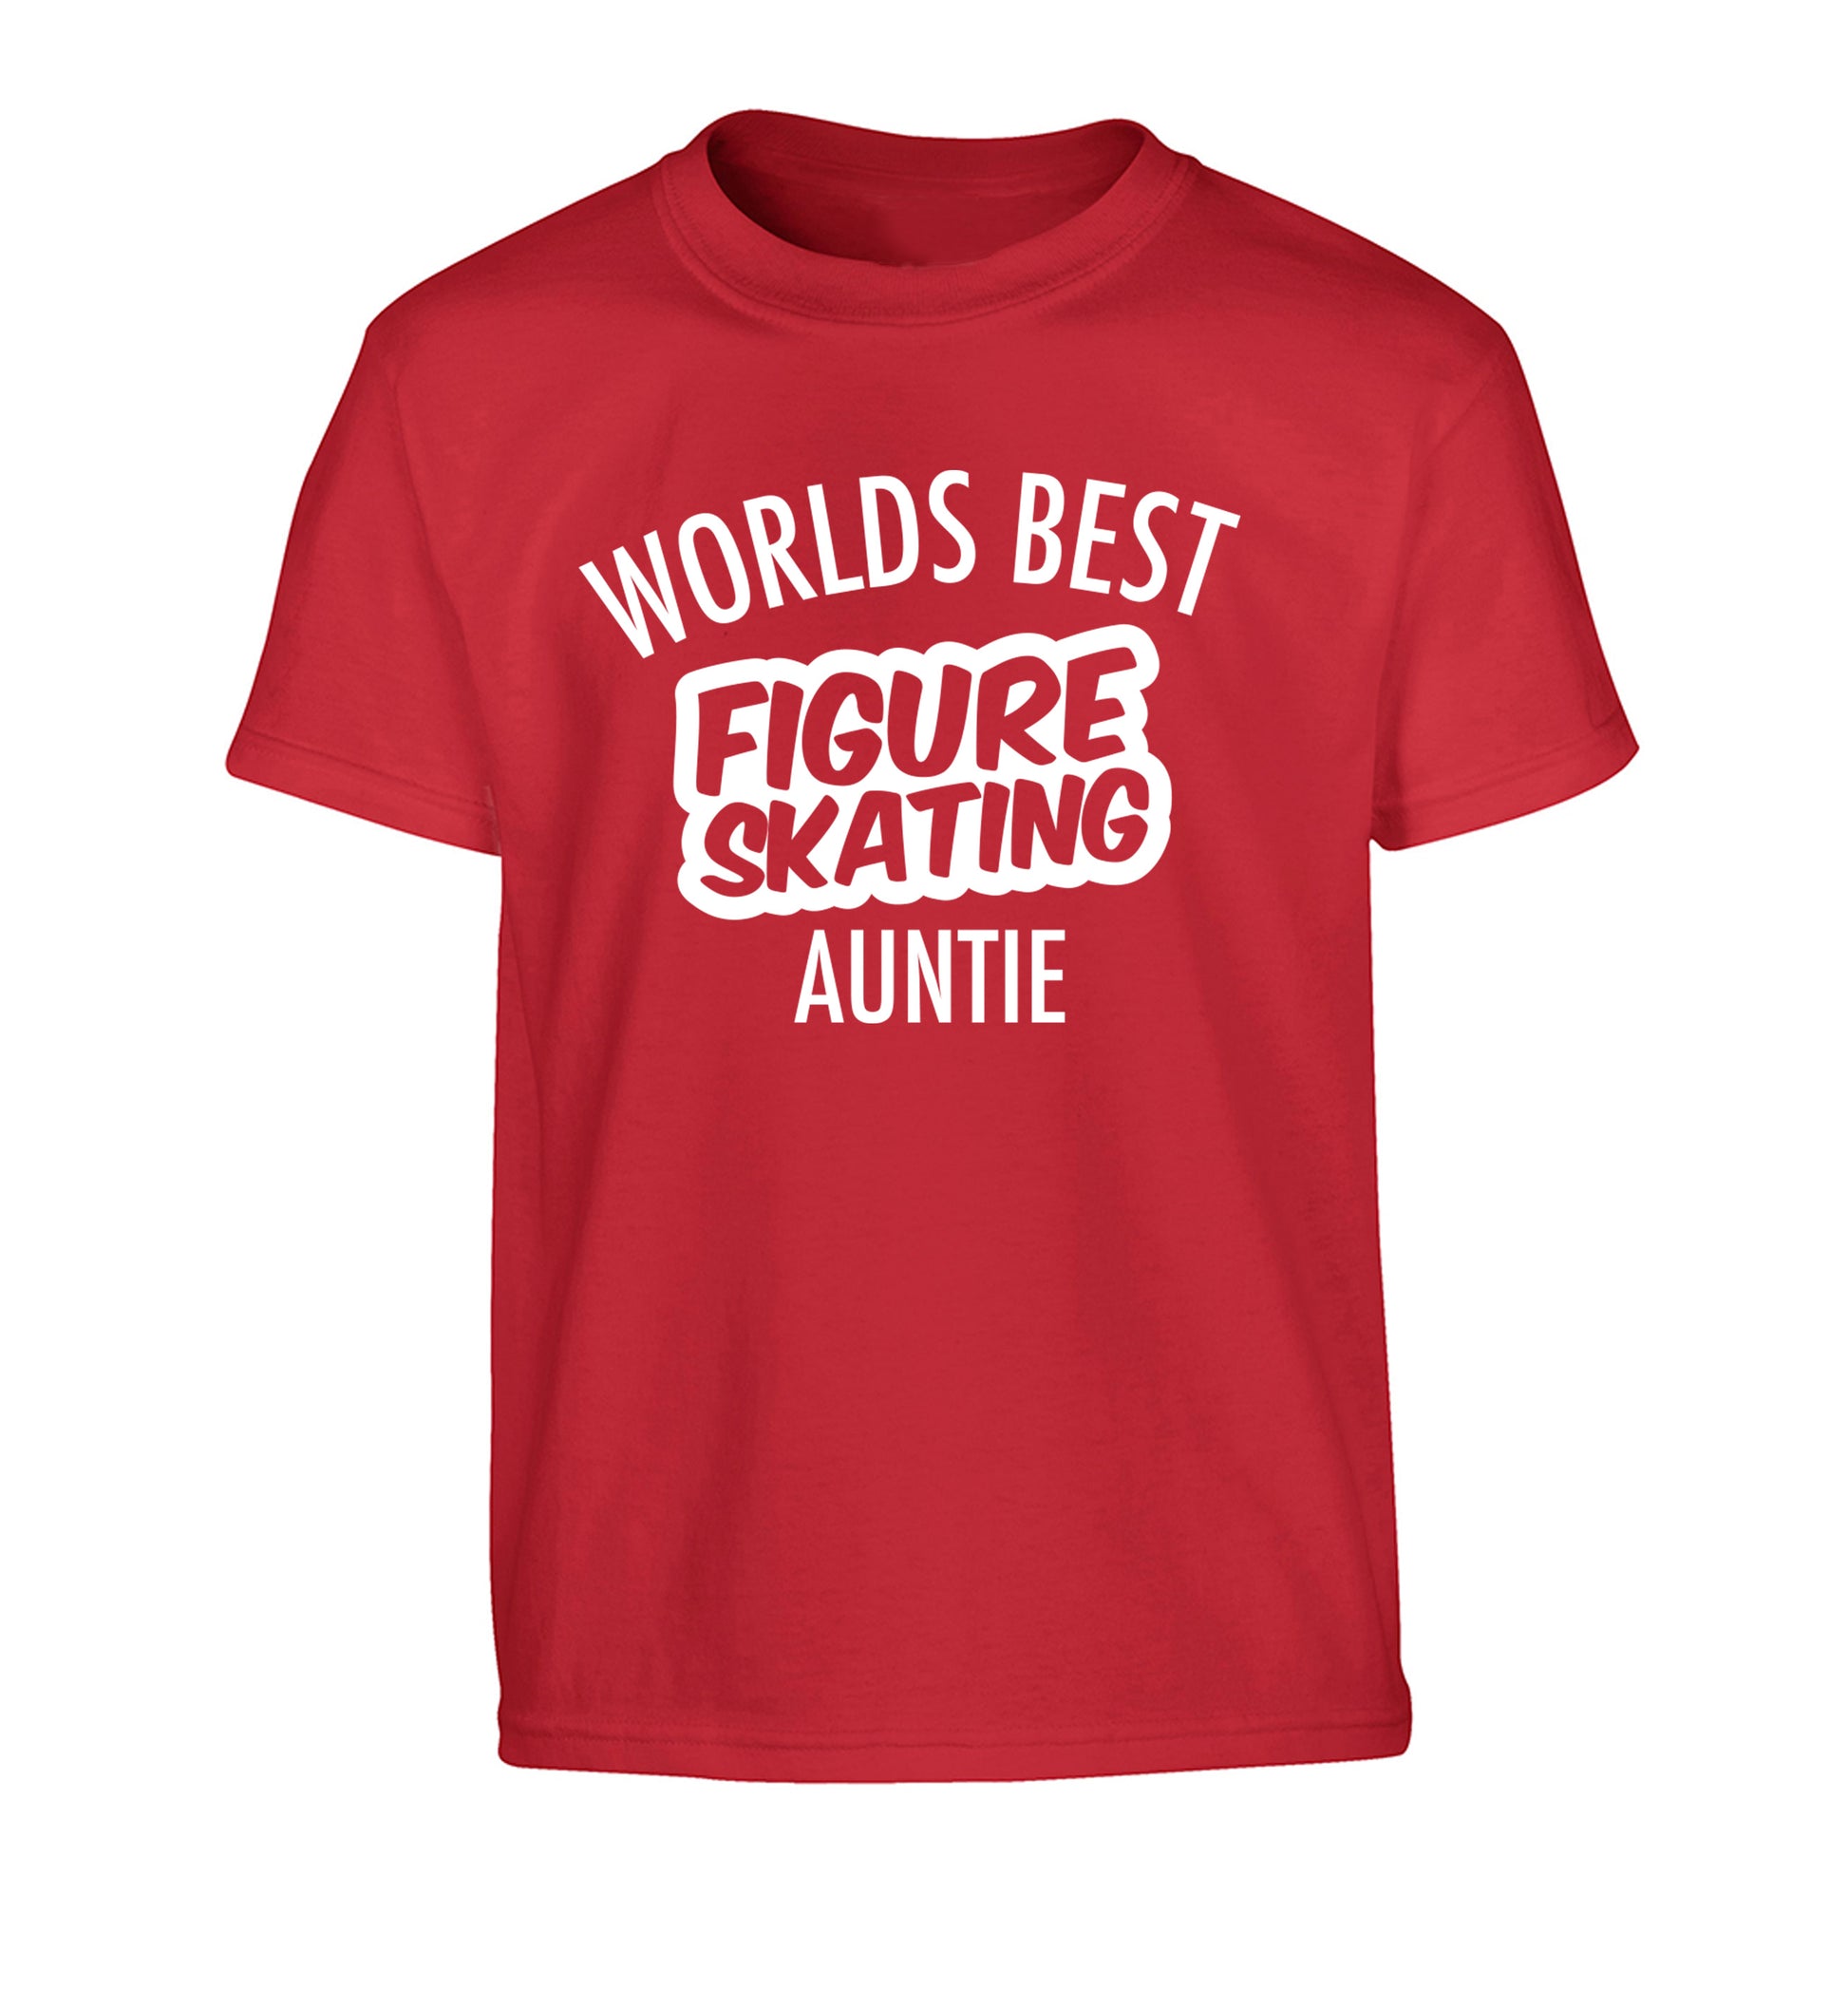 Worlds best figure skating auntie Children's red Tshirt 12-14 Years